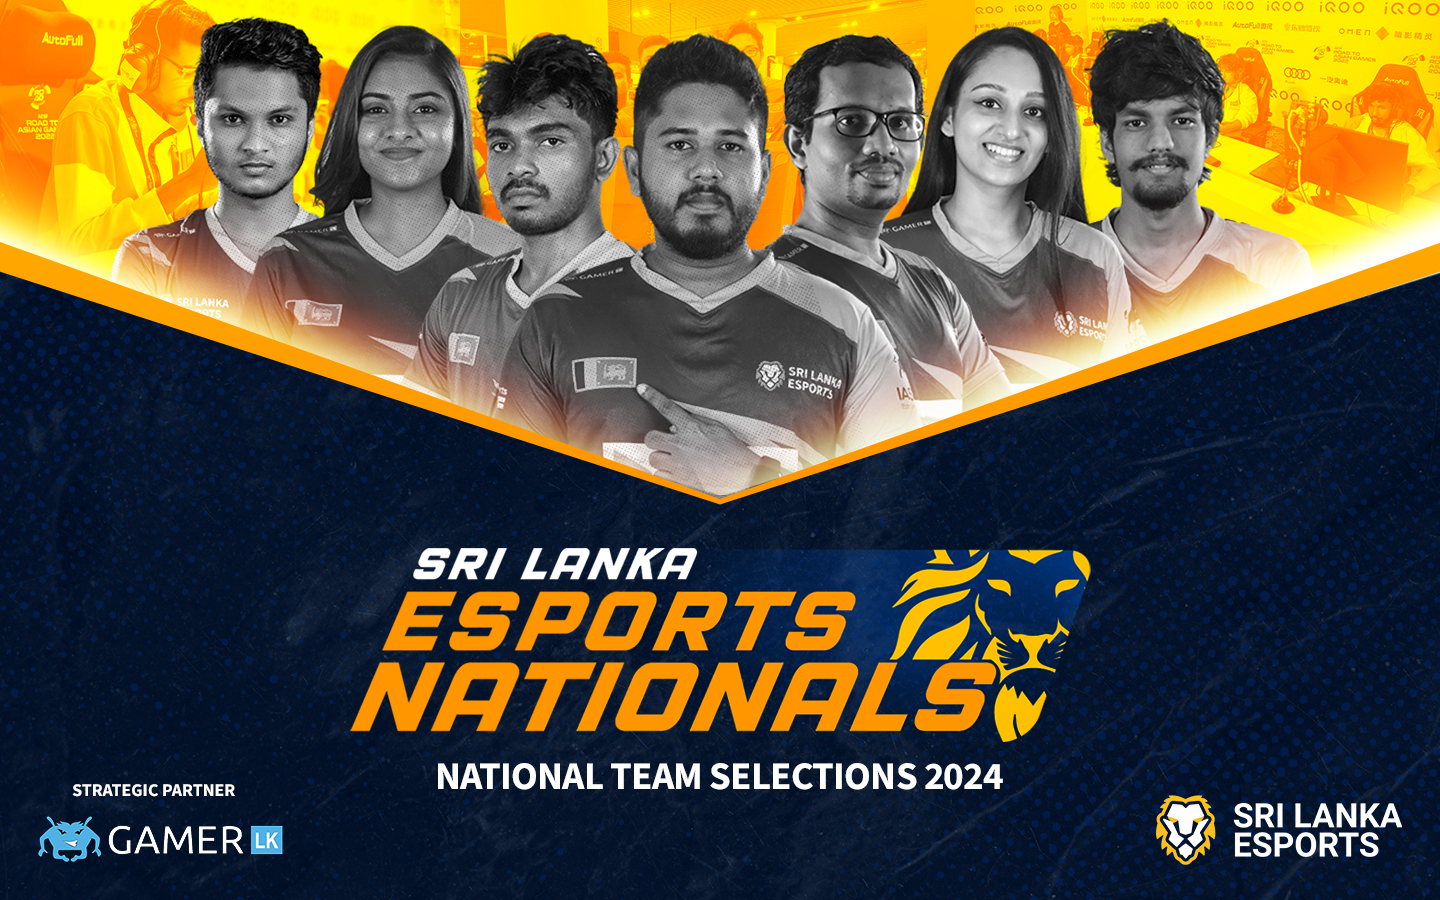 Sri Lanka Esports Nationals 2024